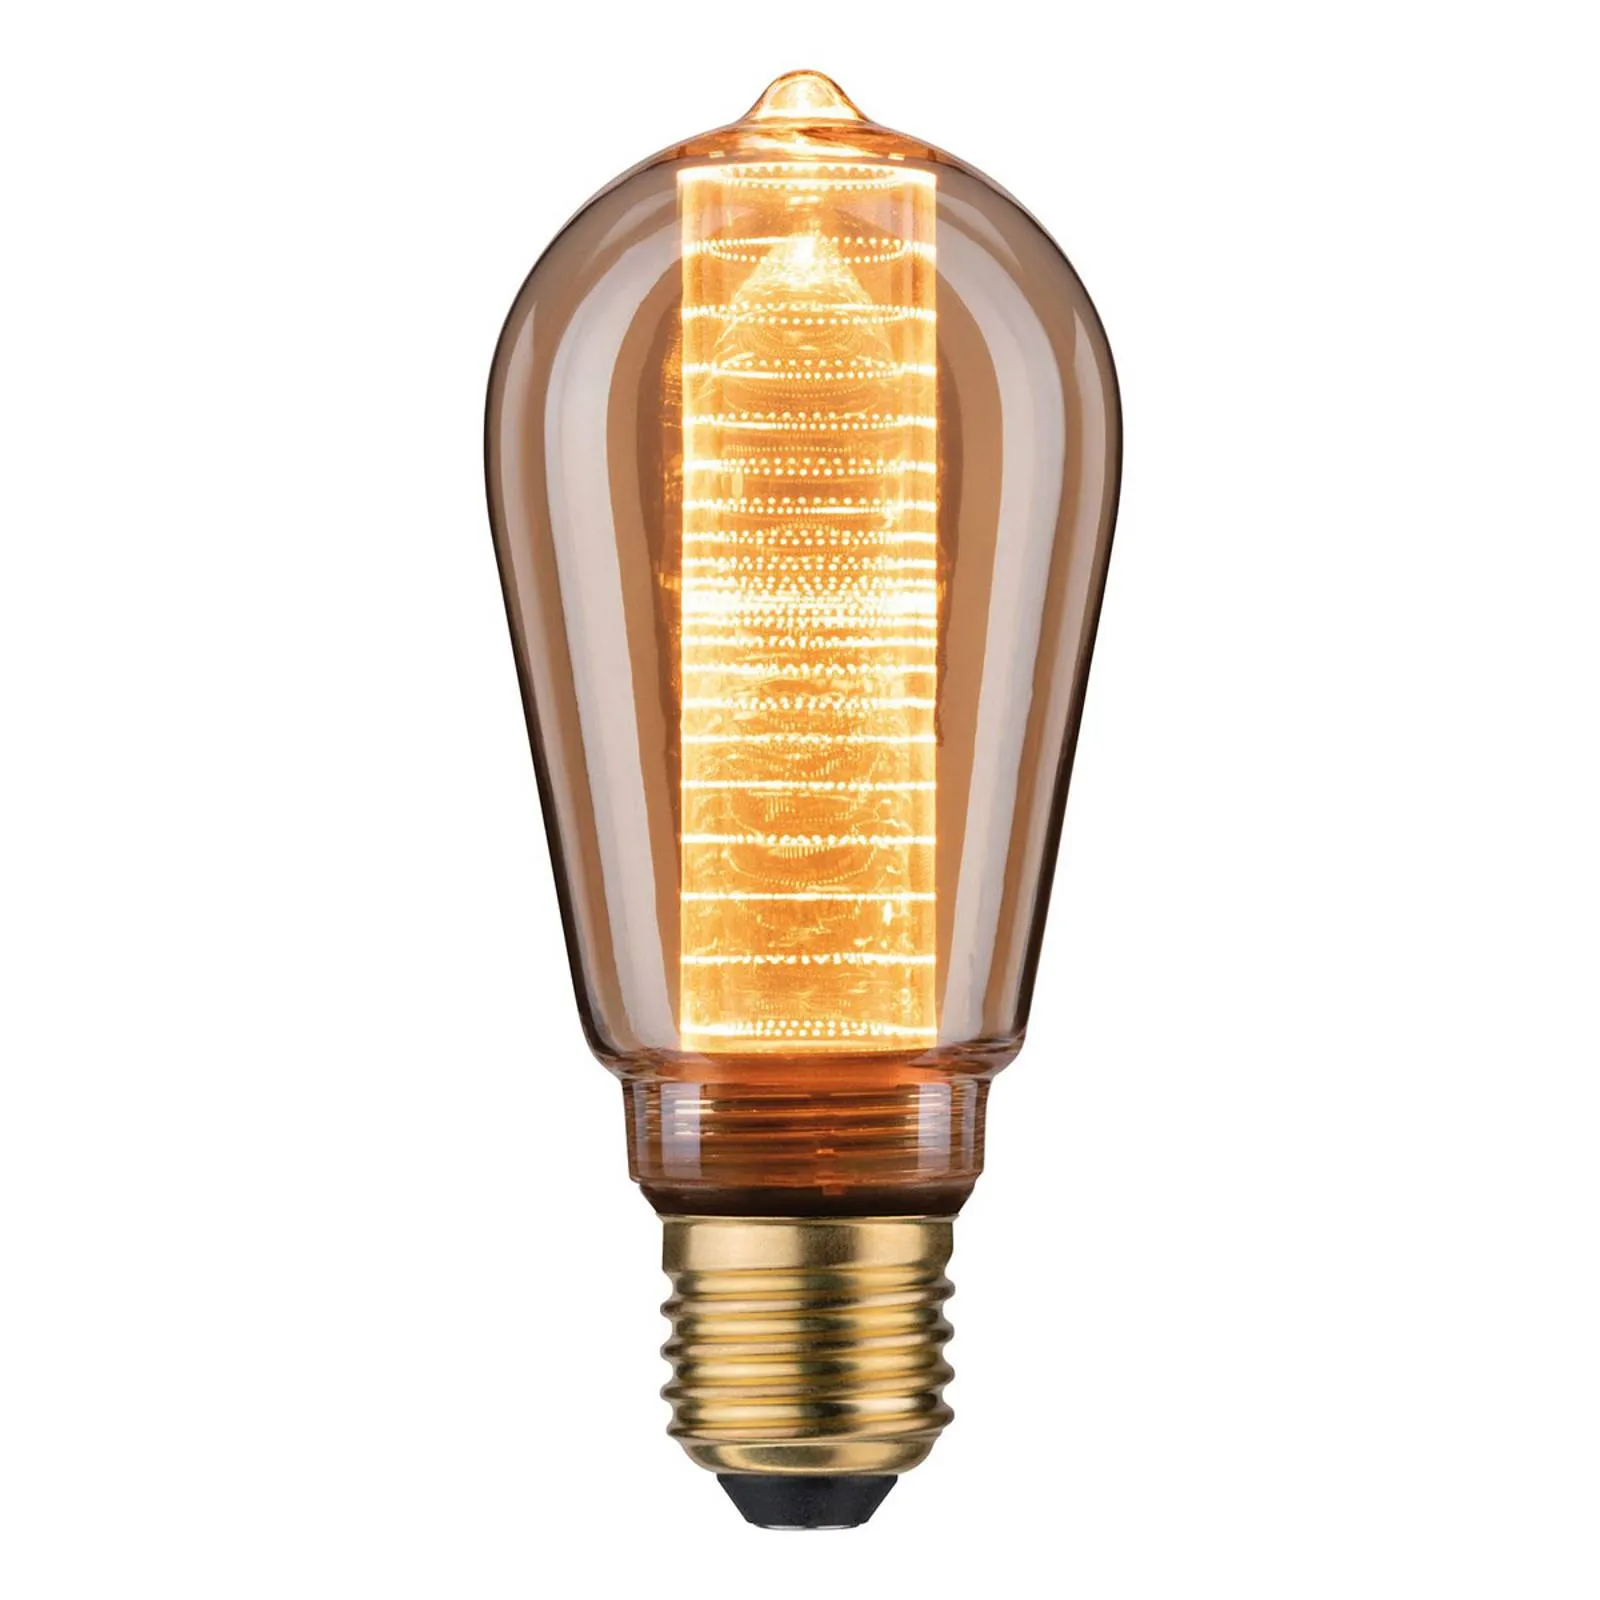 LED bulb E27 ST64 4 W inner glow ring pattern